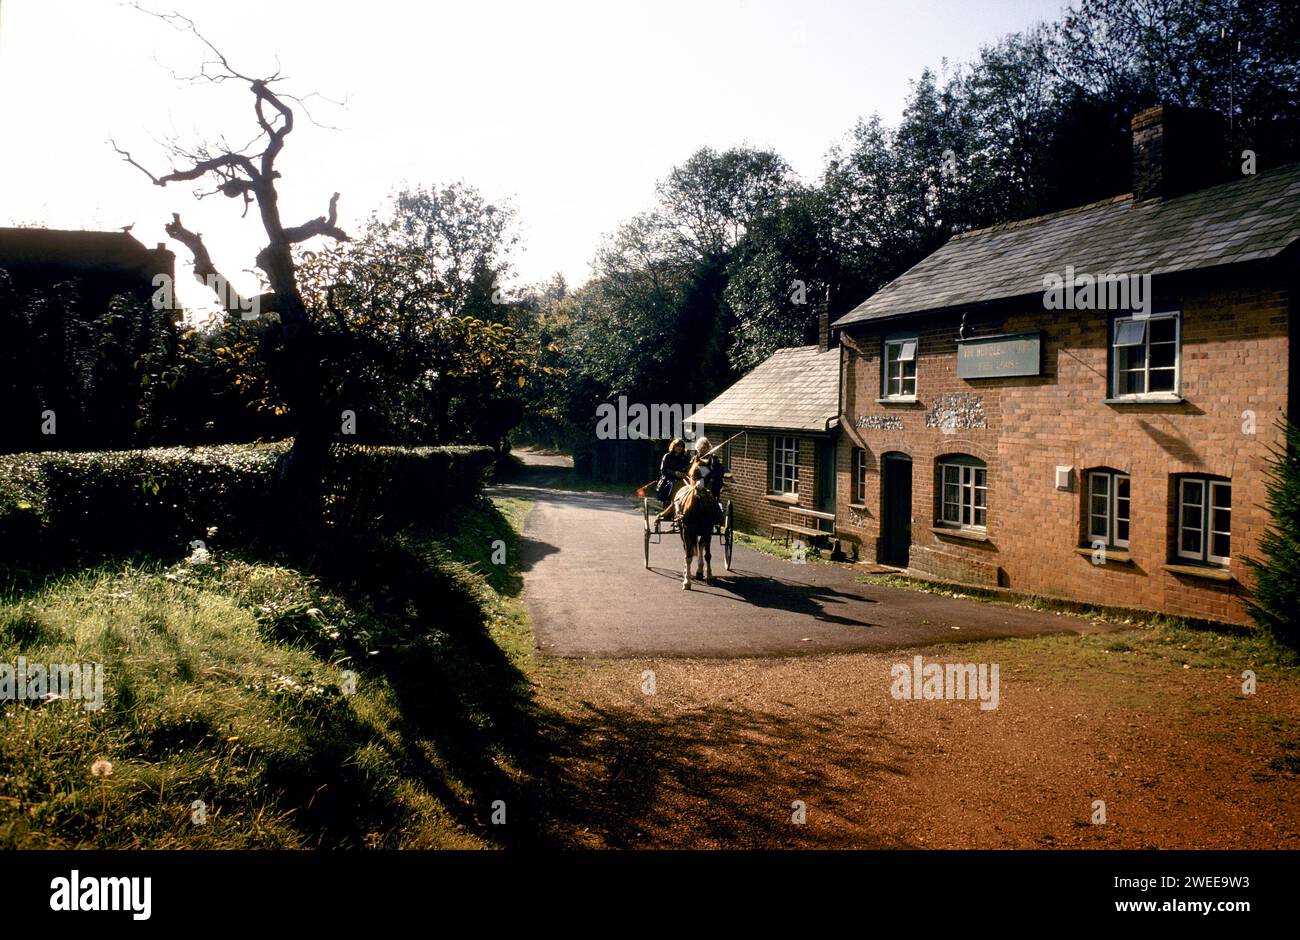 Der Village Pub, die Hurdlers Arms, Binley, Hampshire. Dieser kleine Pub aus roten Backsteinen wurde erstmals von lokalen Holzarbeitern genutzt, die Hürden, bewegliche hölzerne Zäune, oft für Schafe und andere Tiere verwendet haben, herstellten. Der Pub ist über 300 Jahre alt und wird in William Cobbetts „Rural Rides“ erwähnt 1990er Jahre 19991 England Großbritannien HOMER SYKES Stockfoto